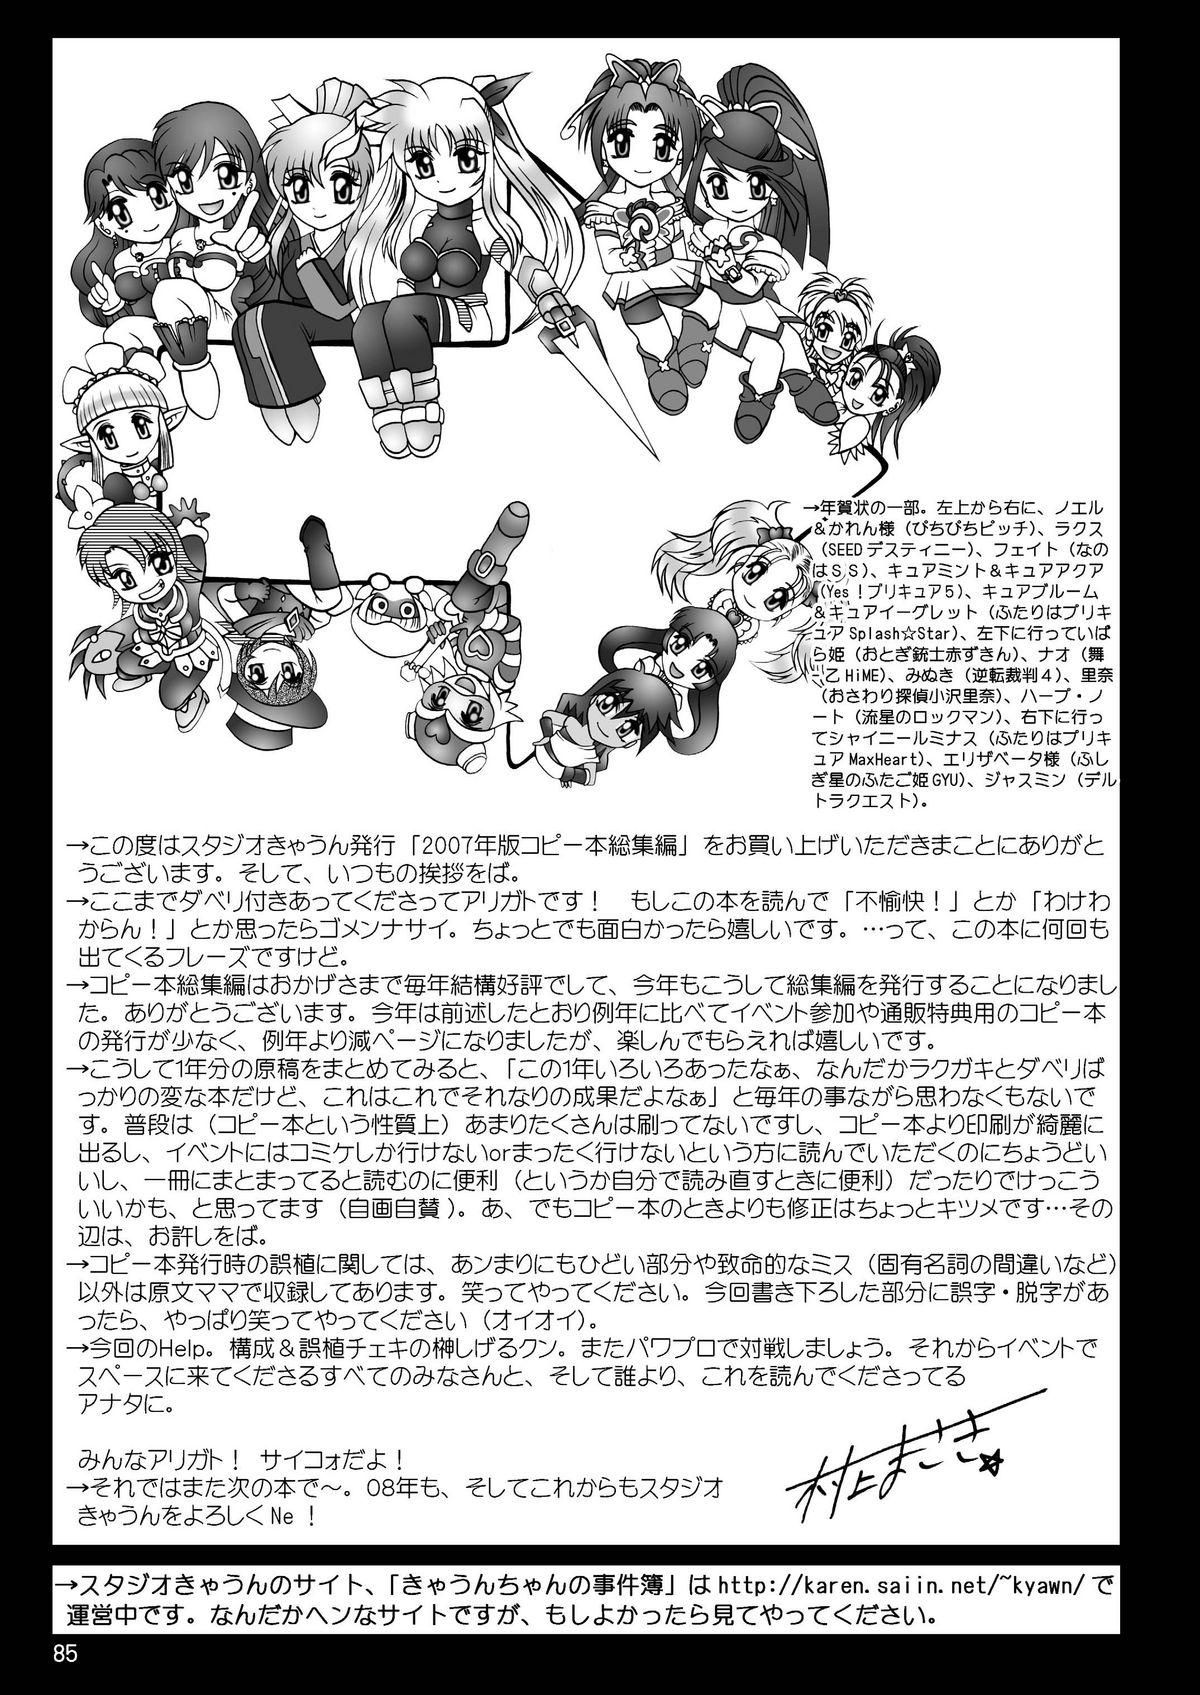 スタジオきゃうんコピー本総集編2007年版 85